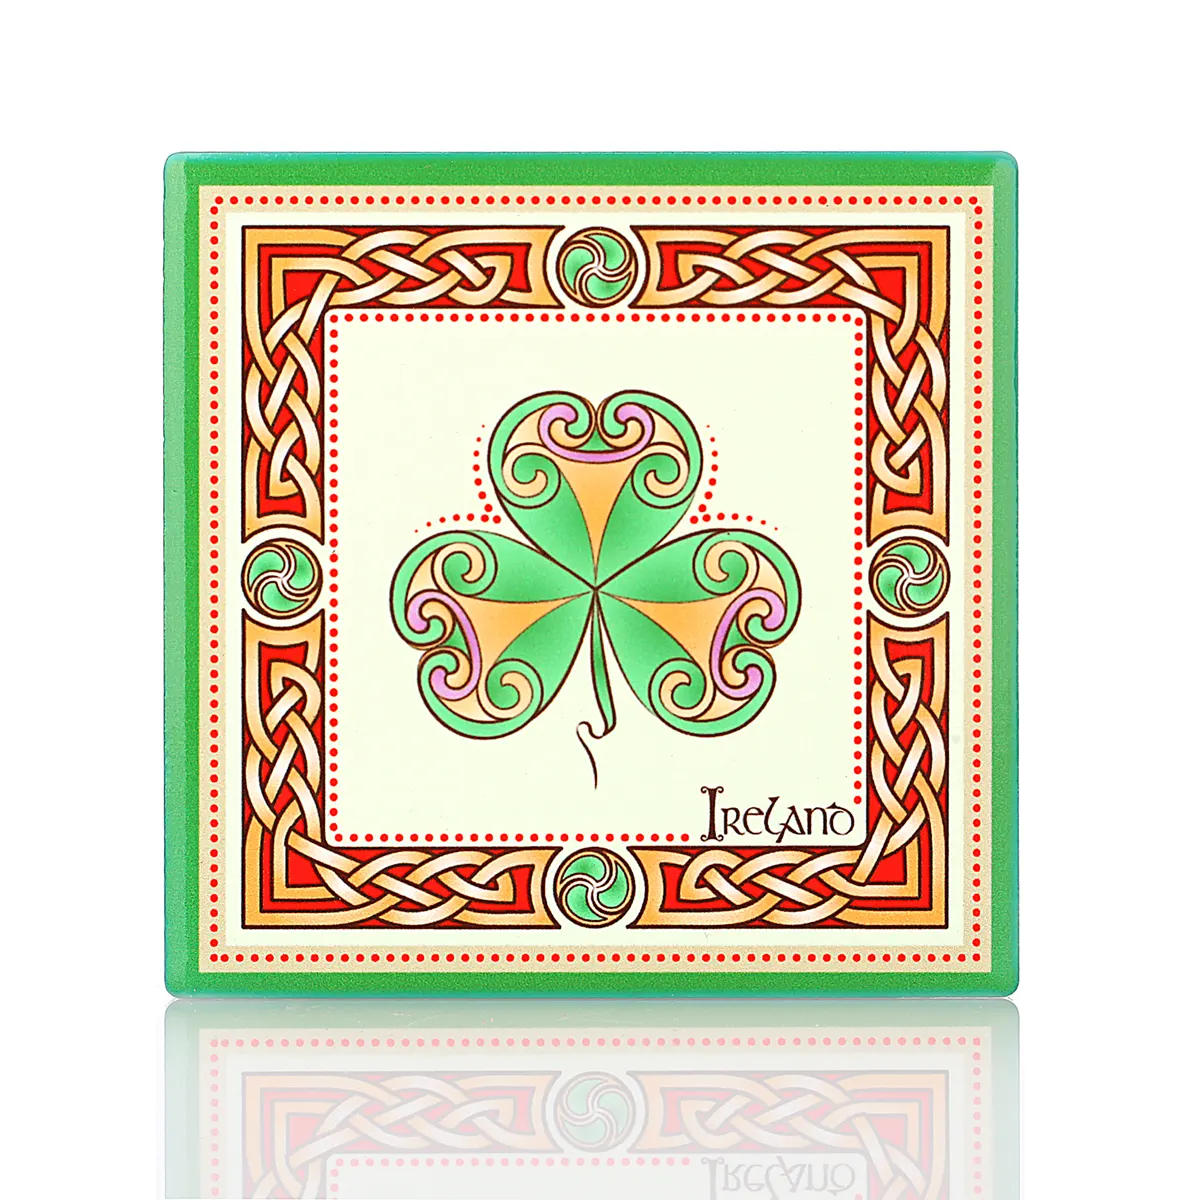 Irish Shamrock Coaster - Keltischer Keramik-Getränkeuntersetzer mit irischem Kleeblatt